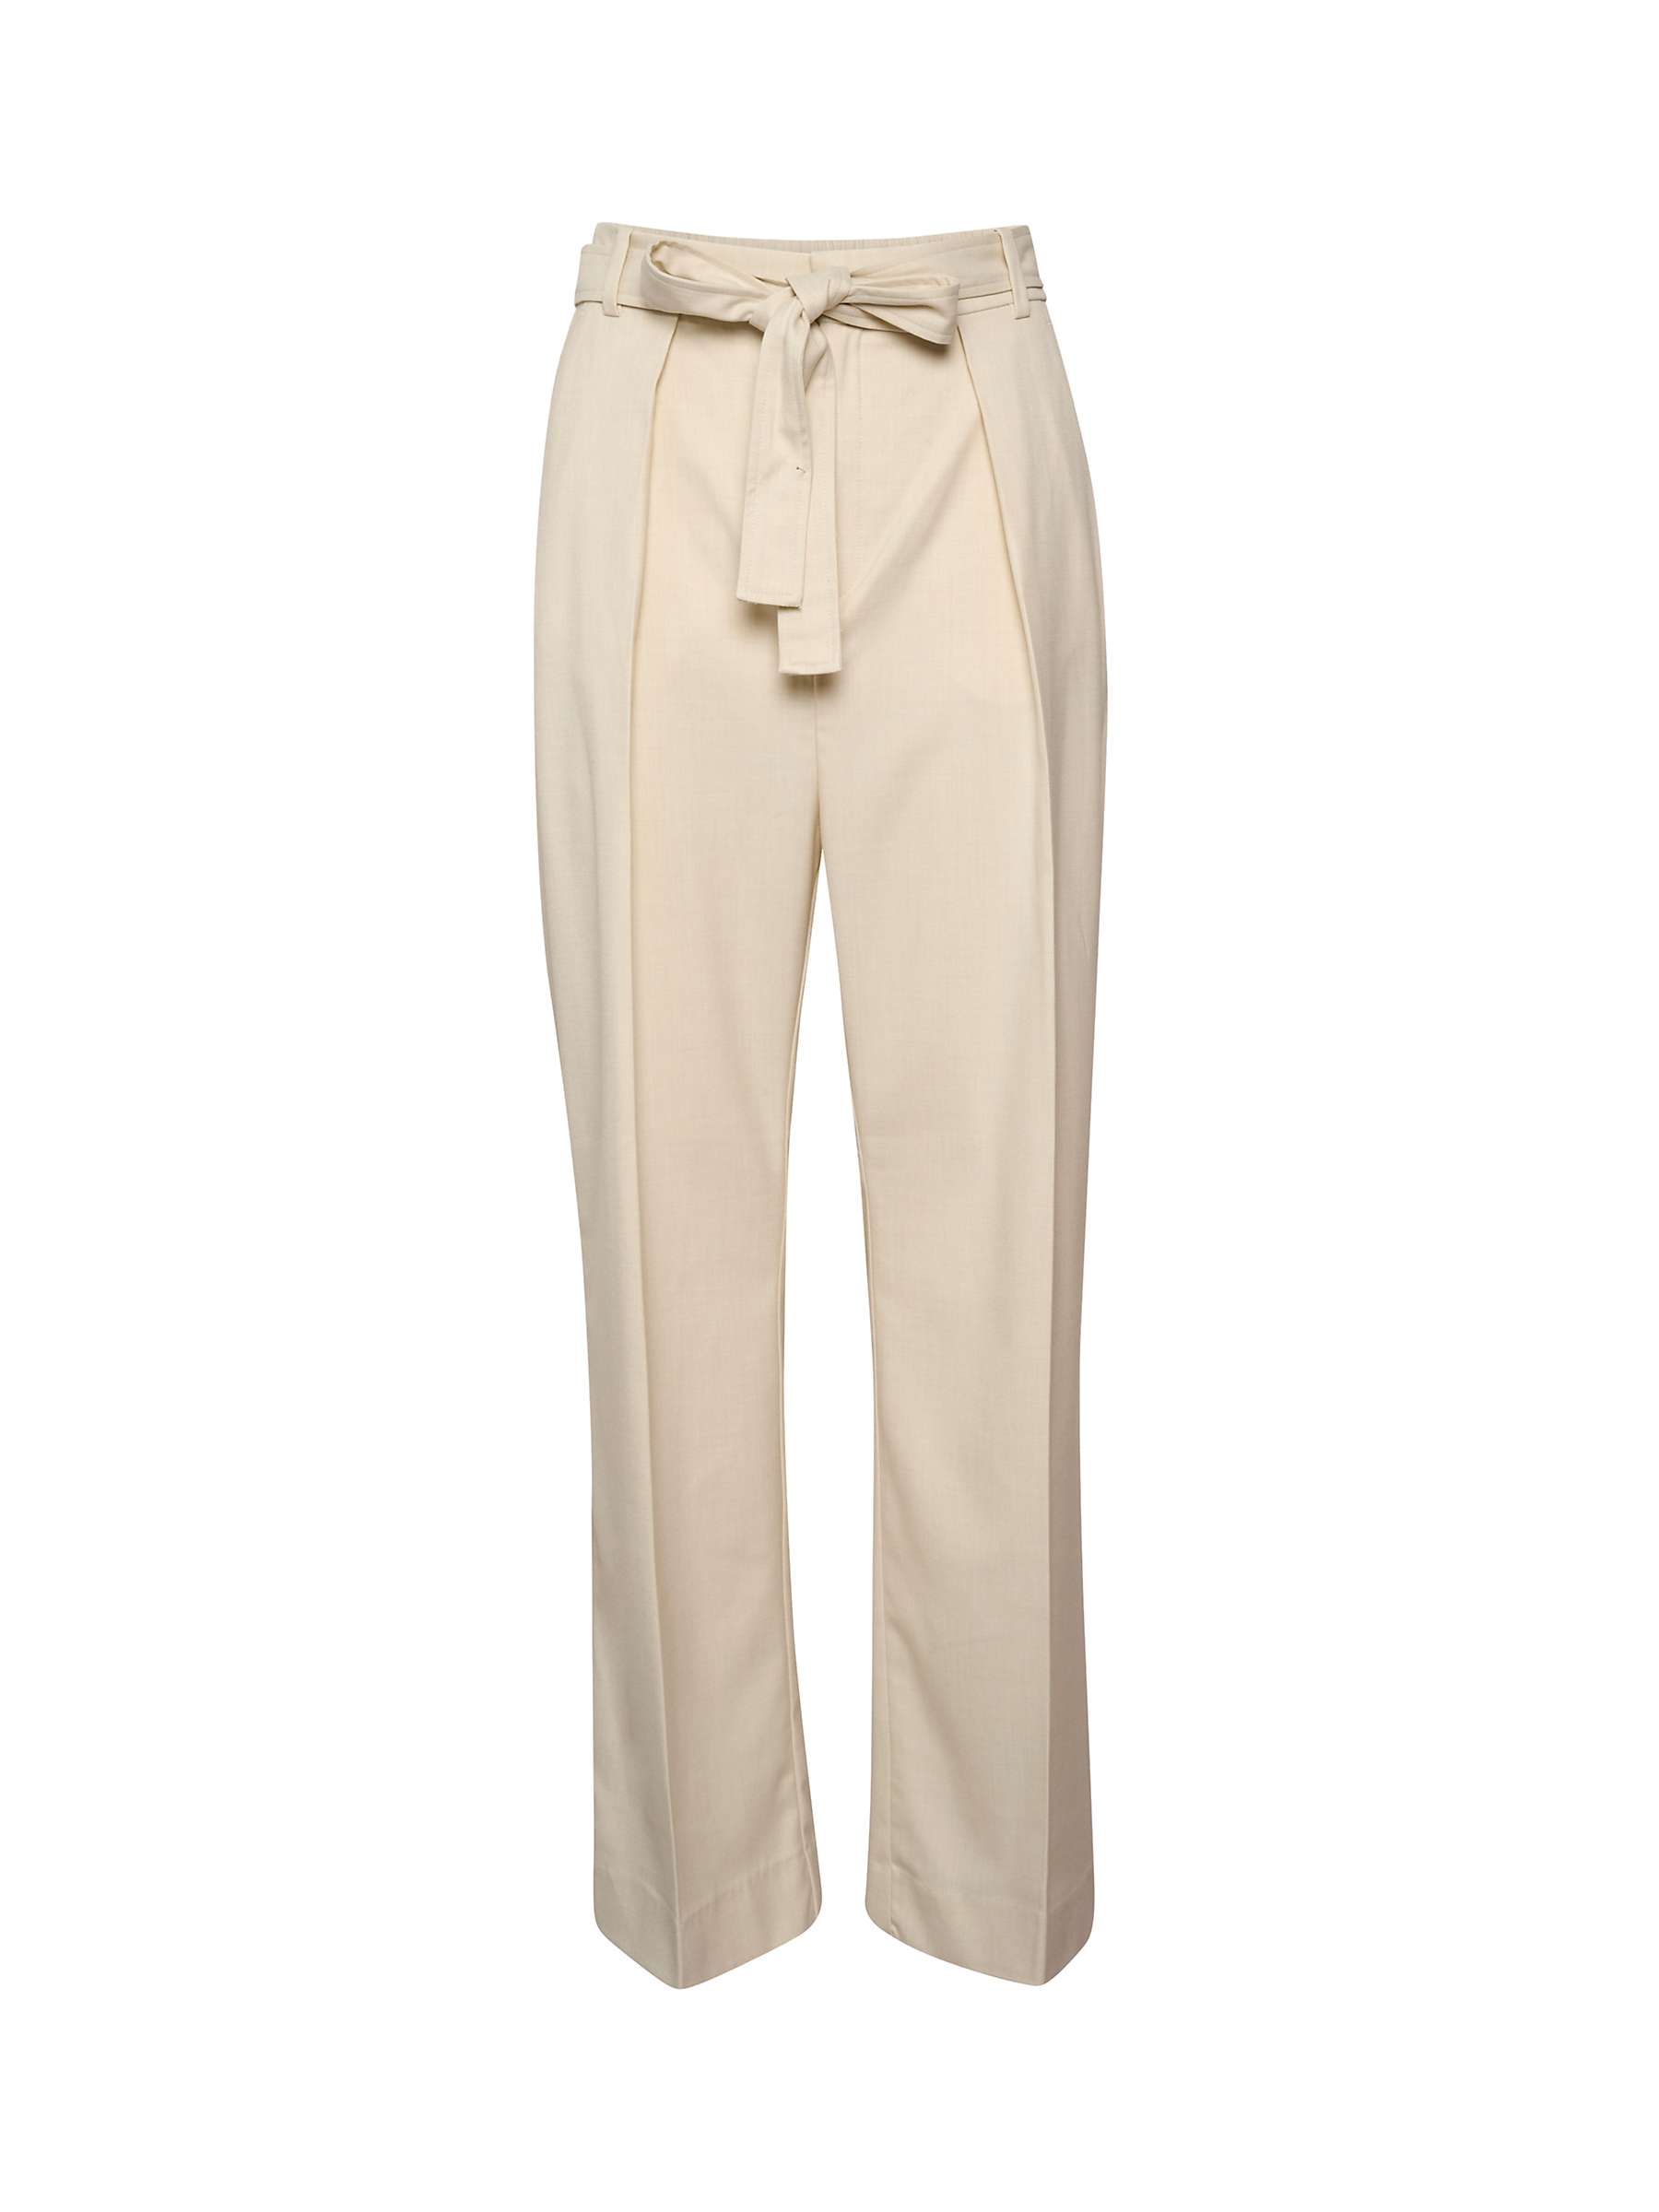 Buy InWear Kyrah Melange Wide Suit Trousers, Eggshell Online at johnlewis.com